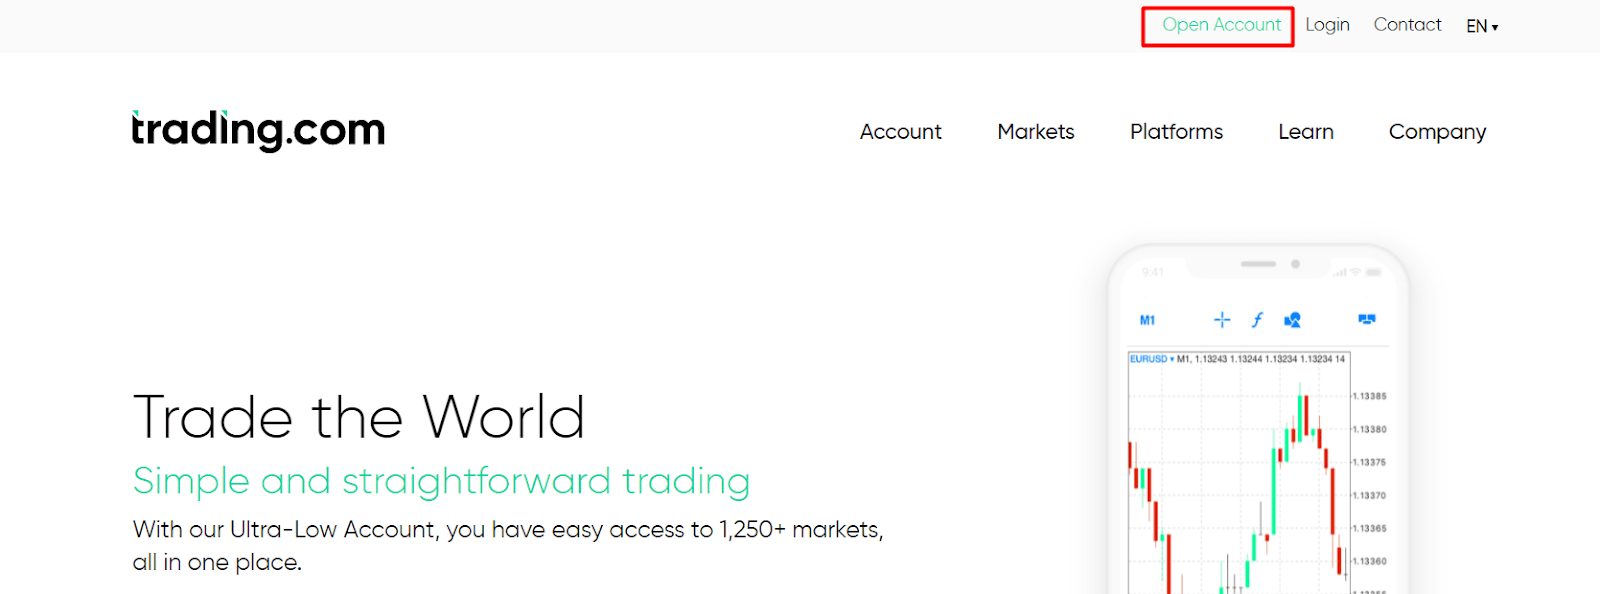 Trading.com Recensione - Apertura del conto